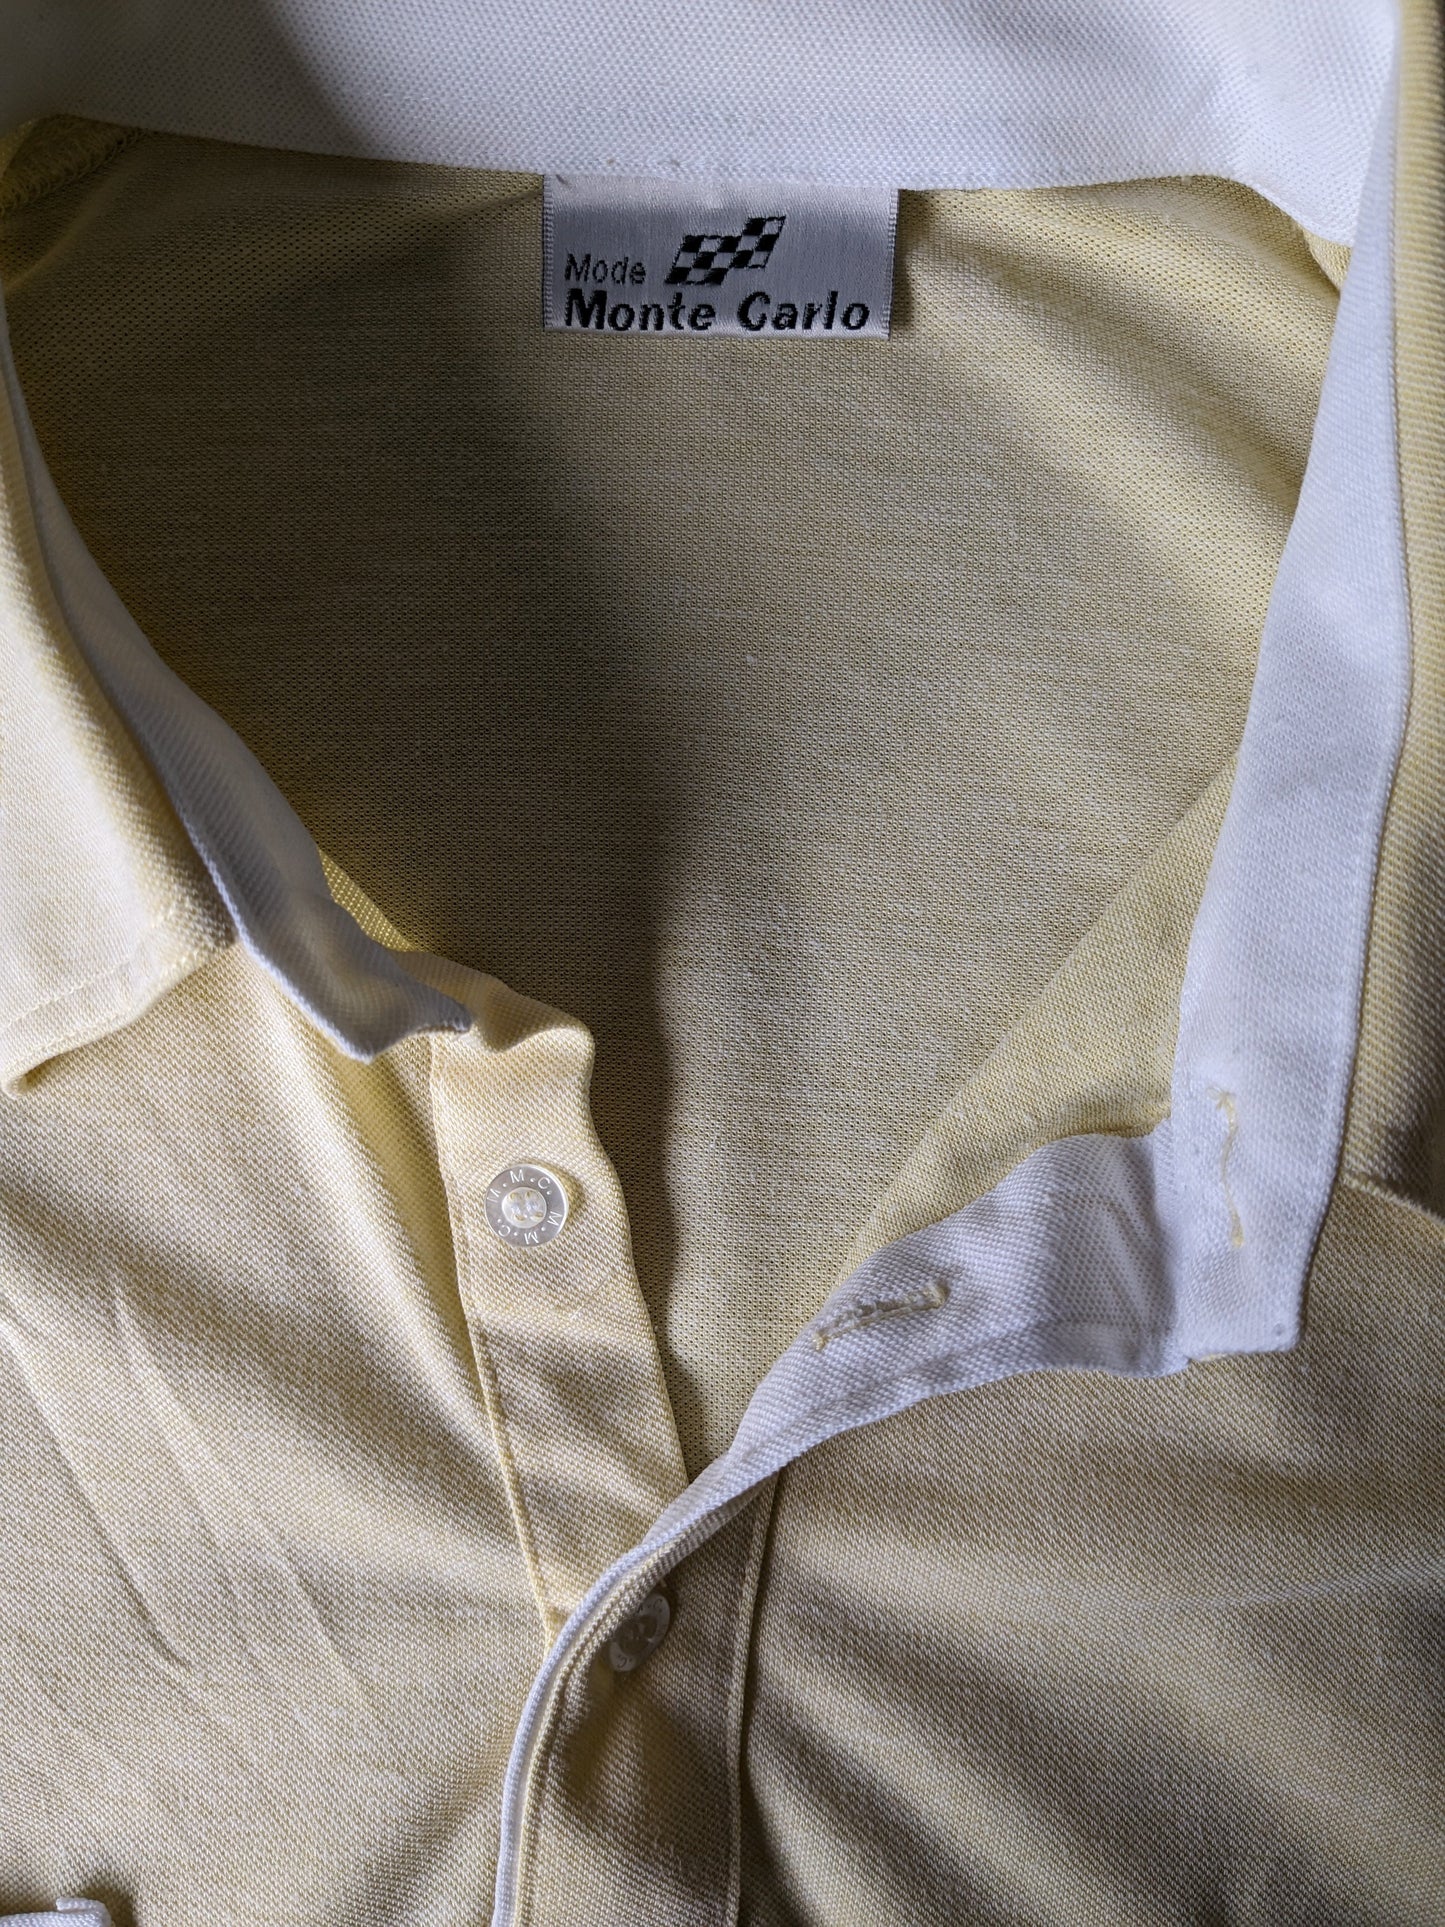 Polo Monte Carlo vintage avec bande élastique. Couleur jaune clair. Taille 4xxl / xxxxl.